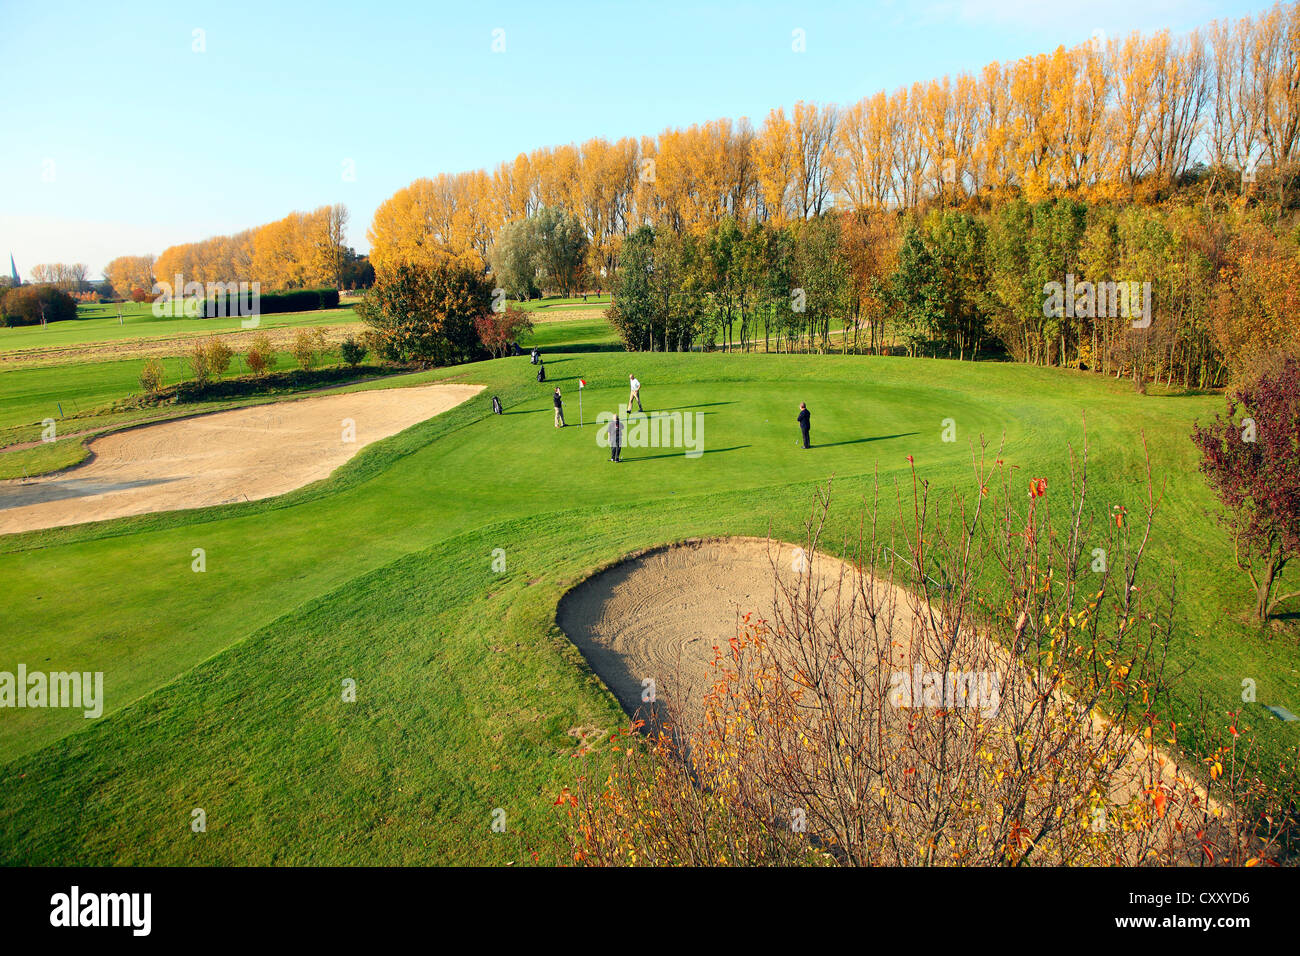 Schloss Horst golf course, lane 7, Par 3, Gelsenkirchen, Germany Stock Photo